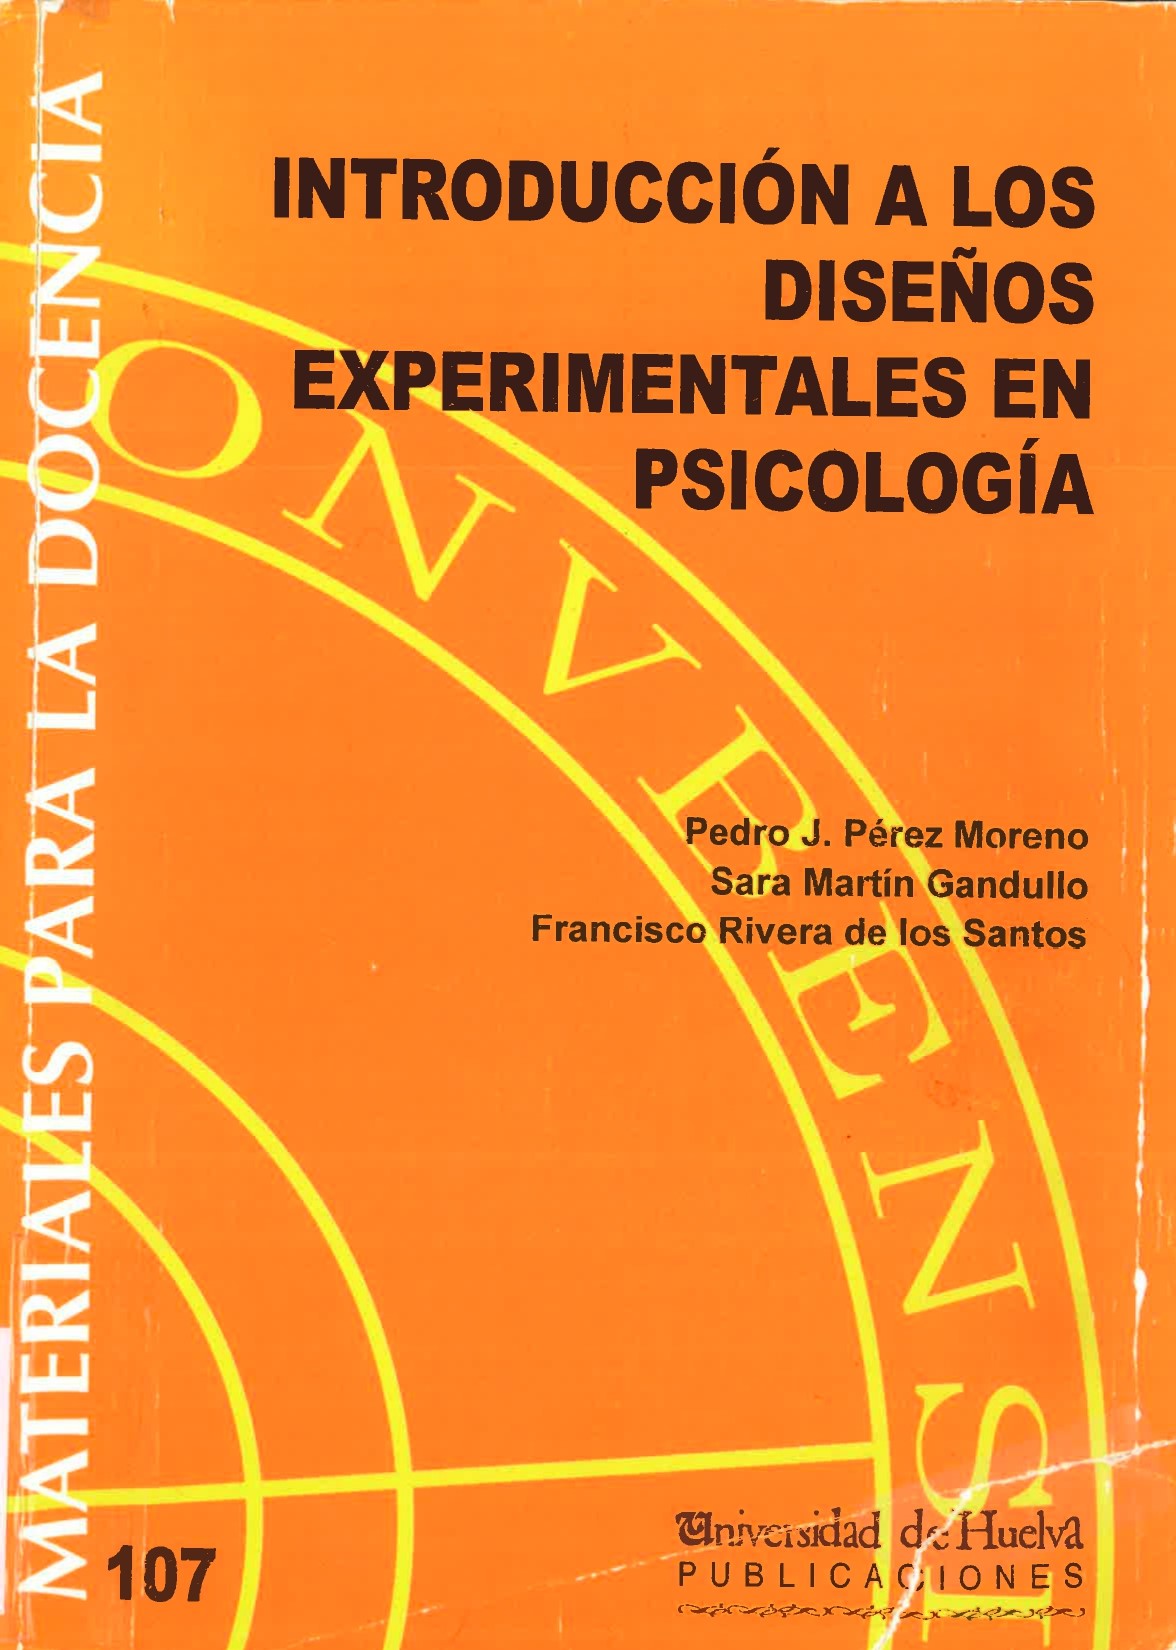 Imagen de portada del libro Introducción a los diseños experimentales en psicología